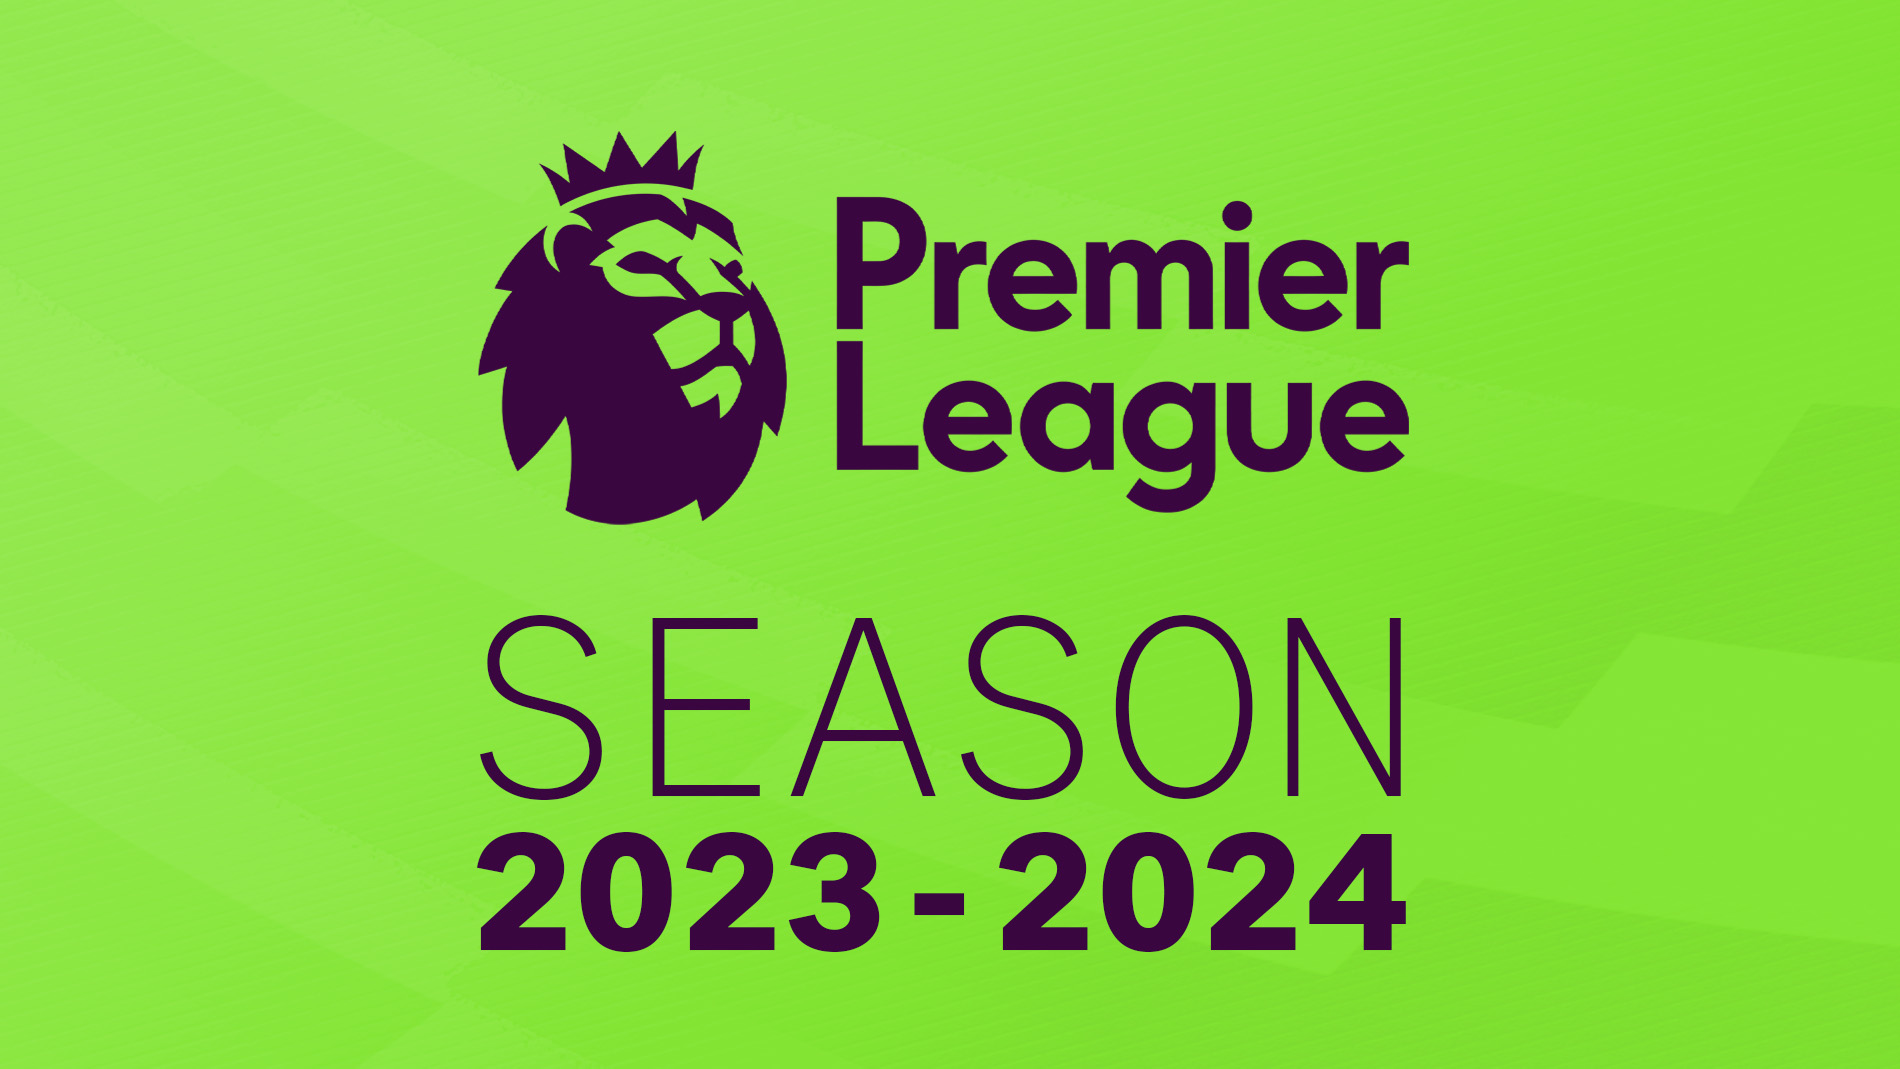 Premier League 2023/2024 começa nesta sexta: onde assistir e